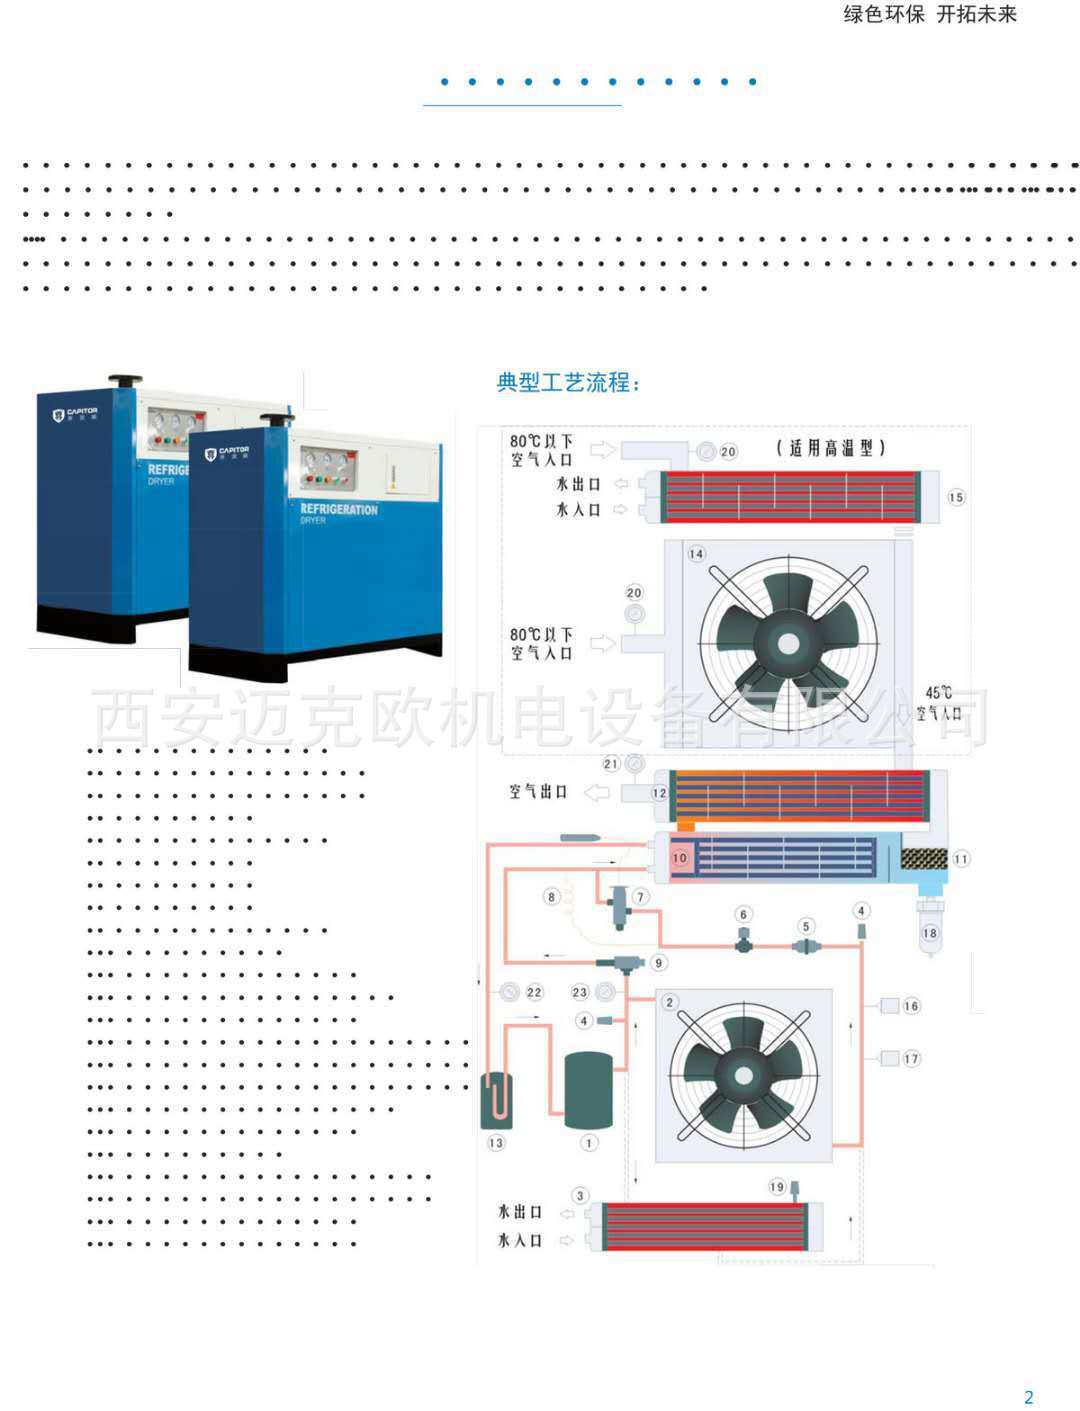 开贝拓高品质干燥机、CFKA-175N 开贝拓冷干机、阿普达吸附式干燥示例图3